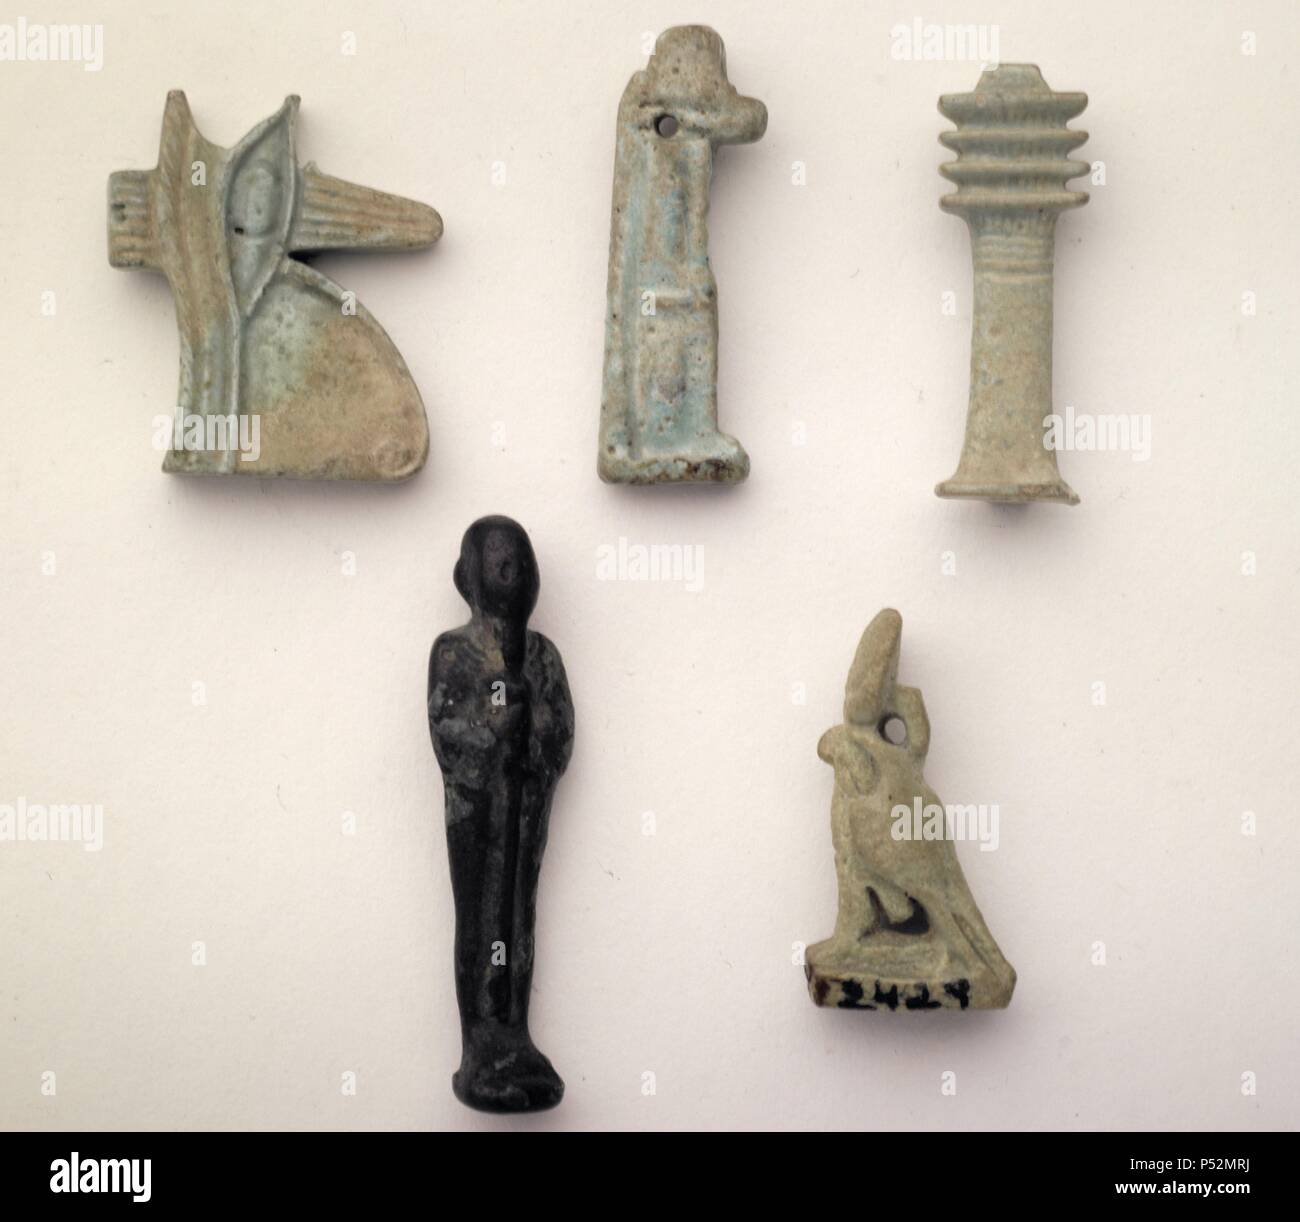 Madrid, M.A.N. Arte Egipcio. Baja Época. Procedencia desconocida. Colección T.Asensi.  2293: Amuleto de Udyat, ojo sagrado de Horus. Fayenza. (alt.2.25, anch.0.5). s.VI-III a.c.   2238: Amuleto de Anubis, dios funerario, protector de la necrópolis y los difuntos. (alt.3.1, anch.0.7) s.VI-III a.c.  2475: Amuleto de fayenza del pilar Dyed, símbolo de Osiris (la estabilidad del mundo, los seres, su duración). Alt.3, anch.0,.5. s.VI-III a.c.   2171:Amuleto de bronce del Dios Ptah, divinidad principal de Menfis, Dios creador de la palabra y padre de los dioses, de todas las cosas, patrón de orfebre Stock Photo